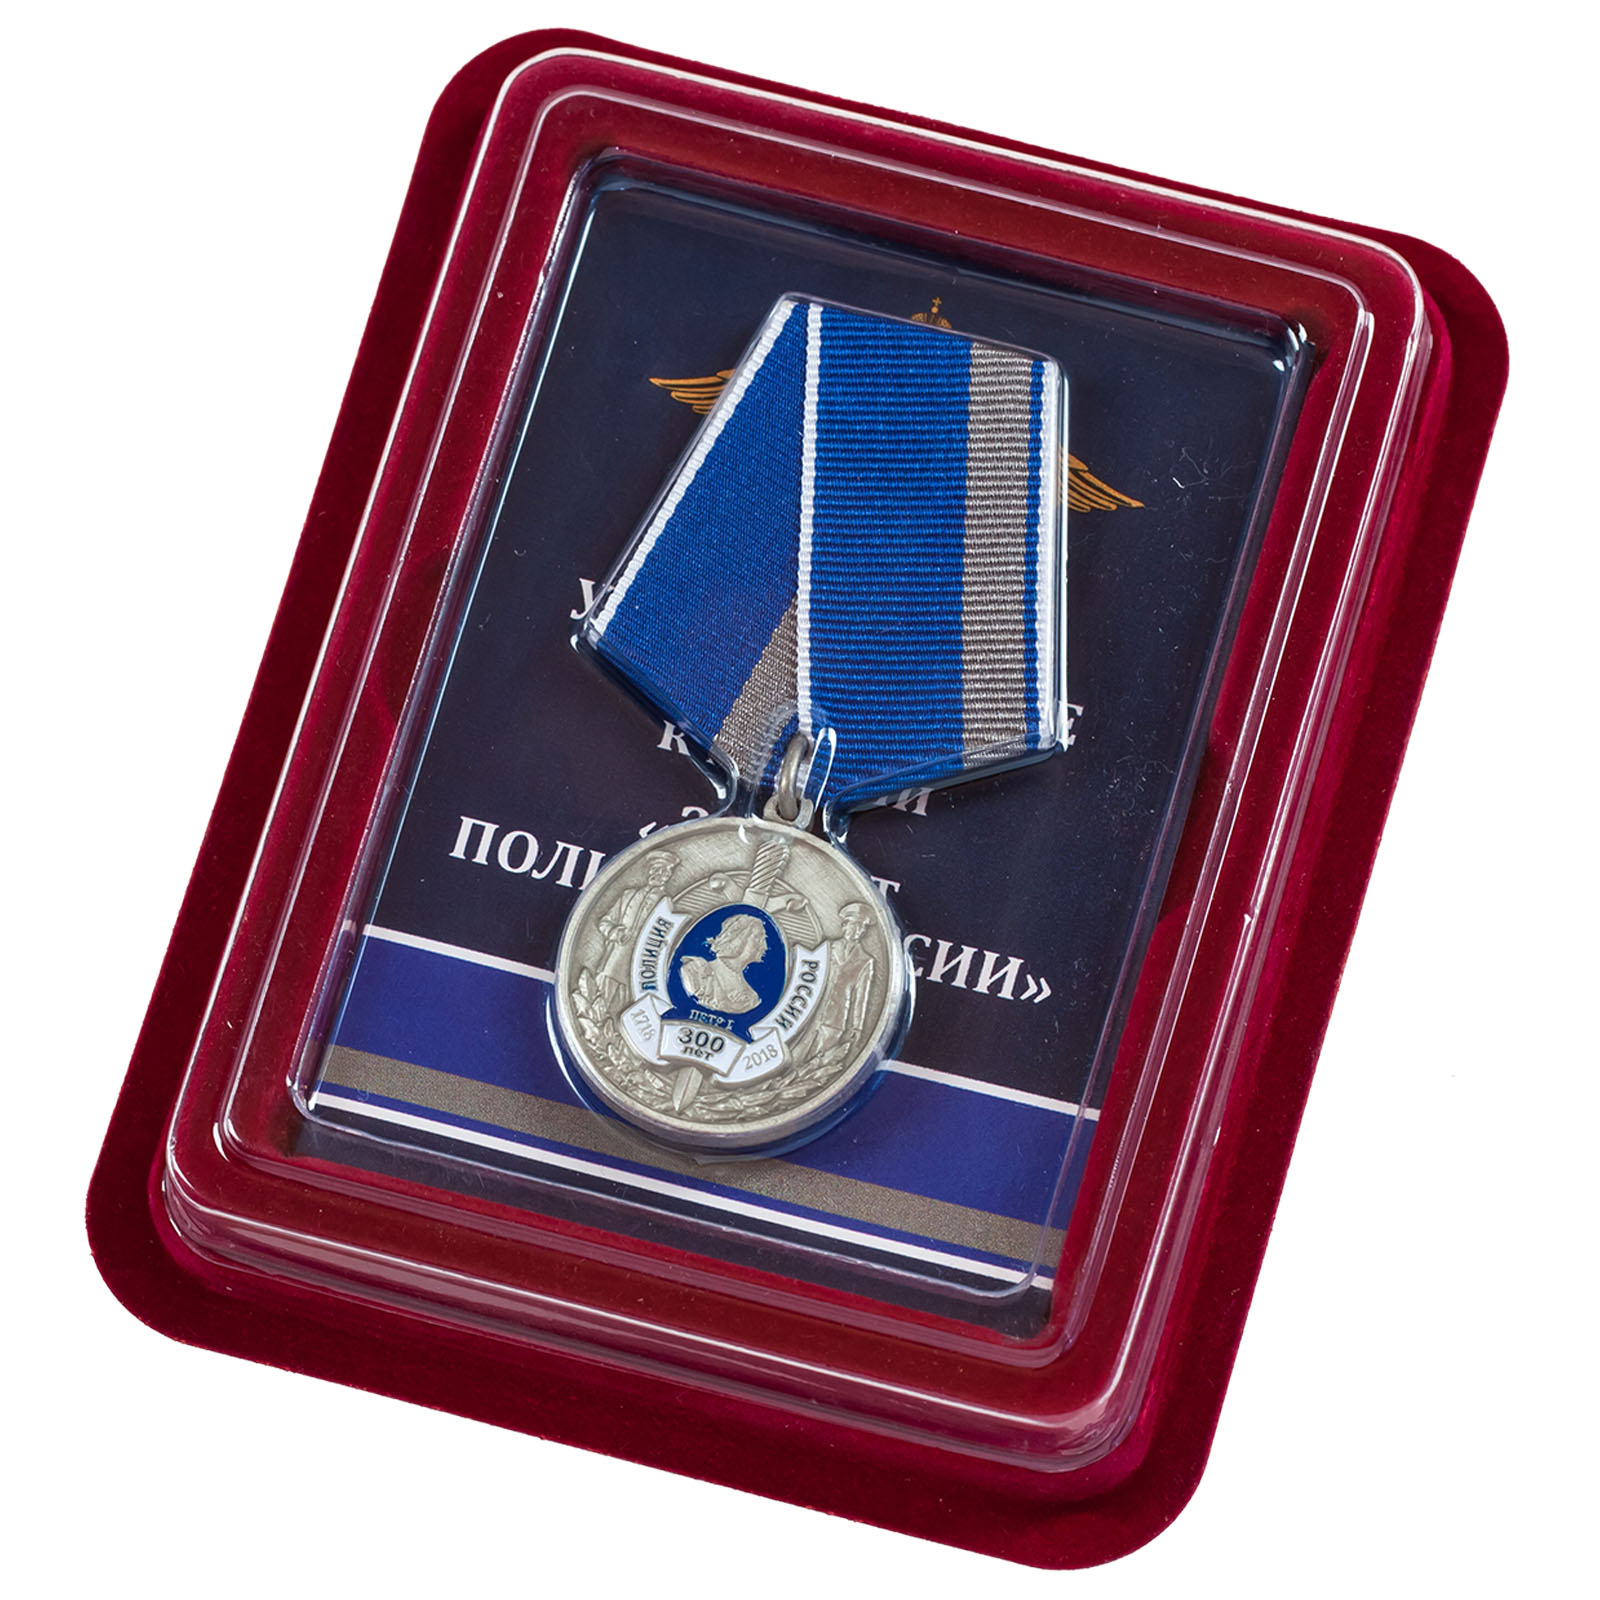 Купить медаль "300 лет Полиции России" в наградном футляре по выгодной цене